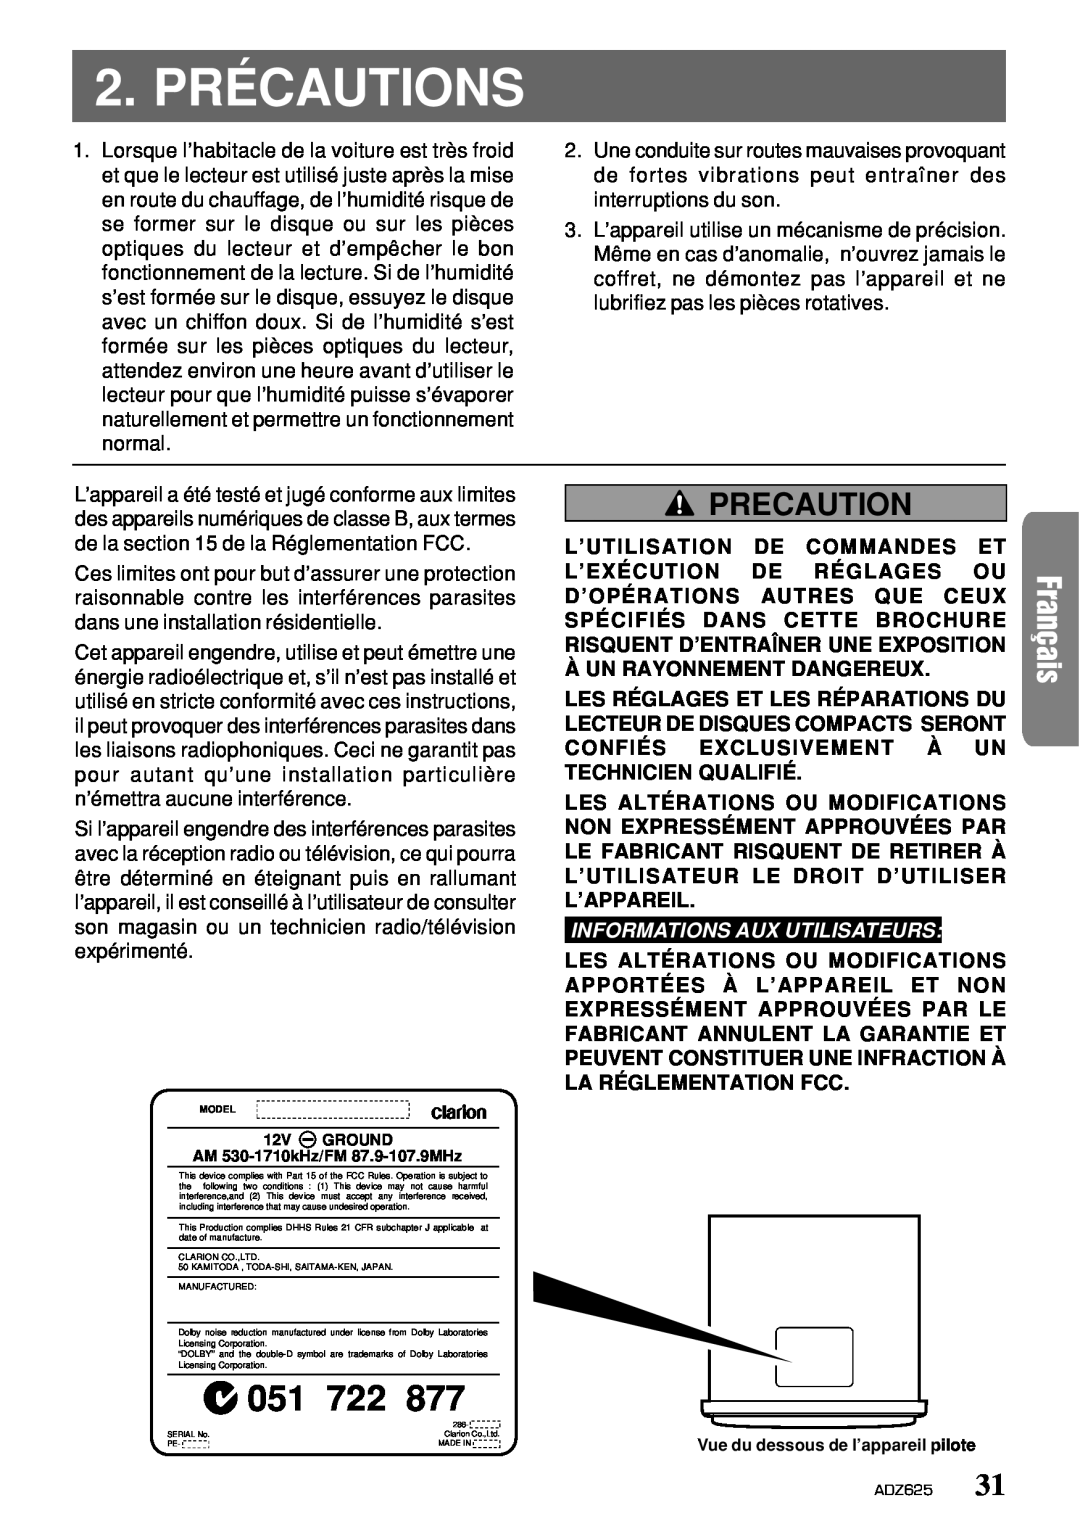 Clarion ADZ625 owner manual 2. PRÉCAUTIONS, Precaution, 051 722, Informations Aux Utilisateurs 